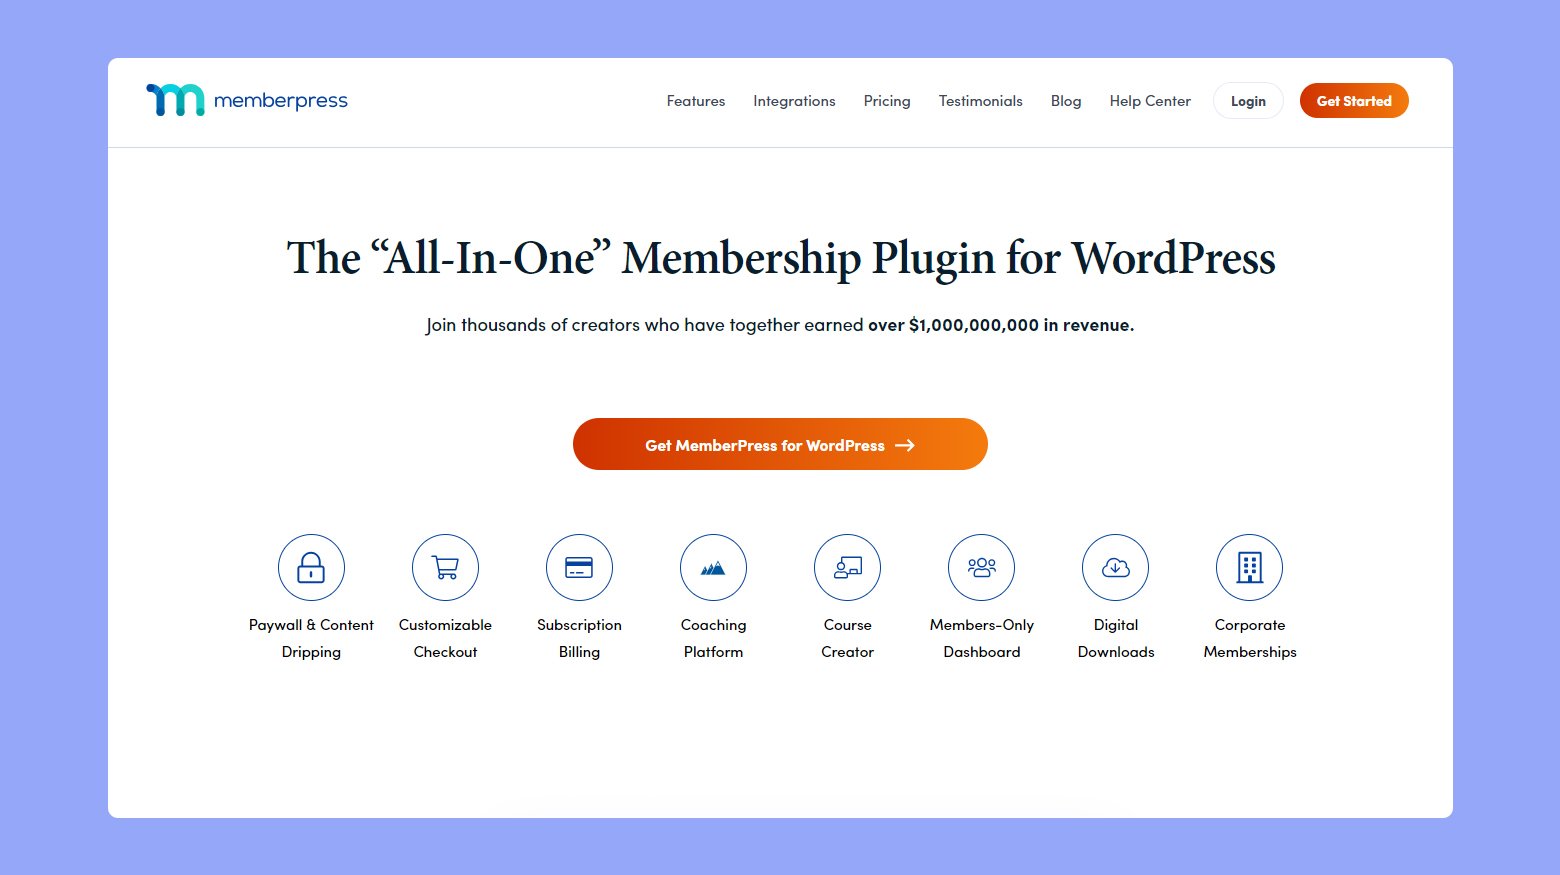 Memberpress membership plugin for WordPress